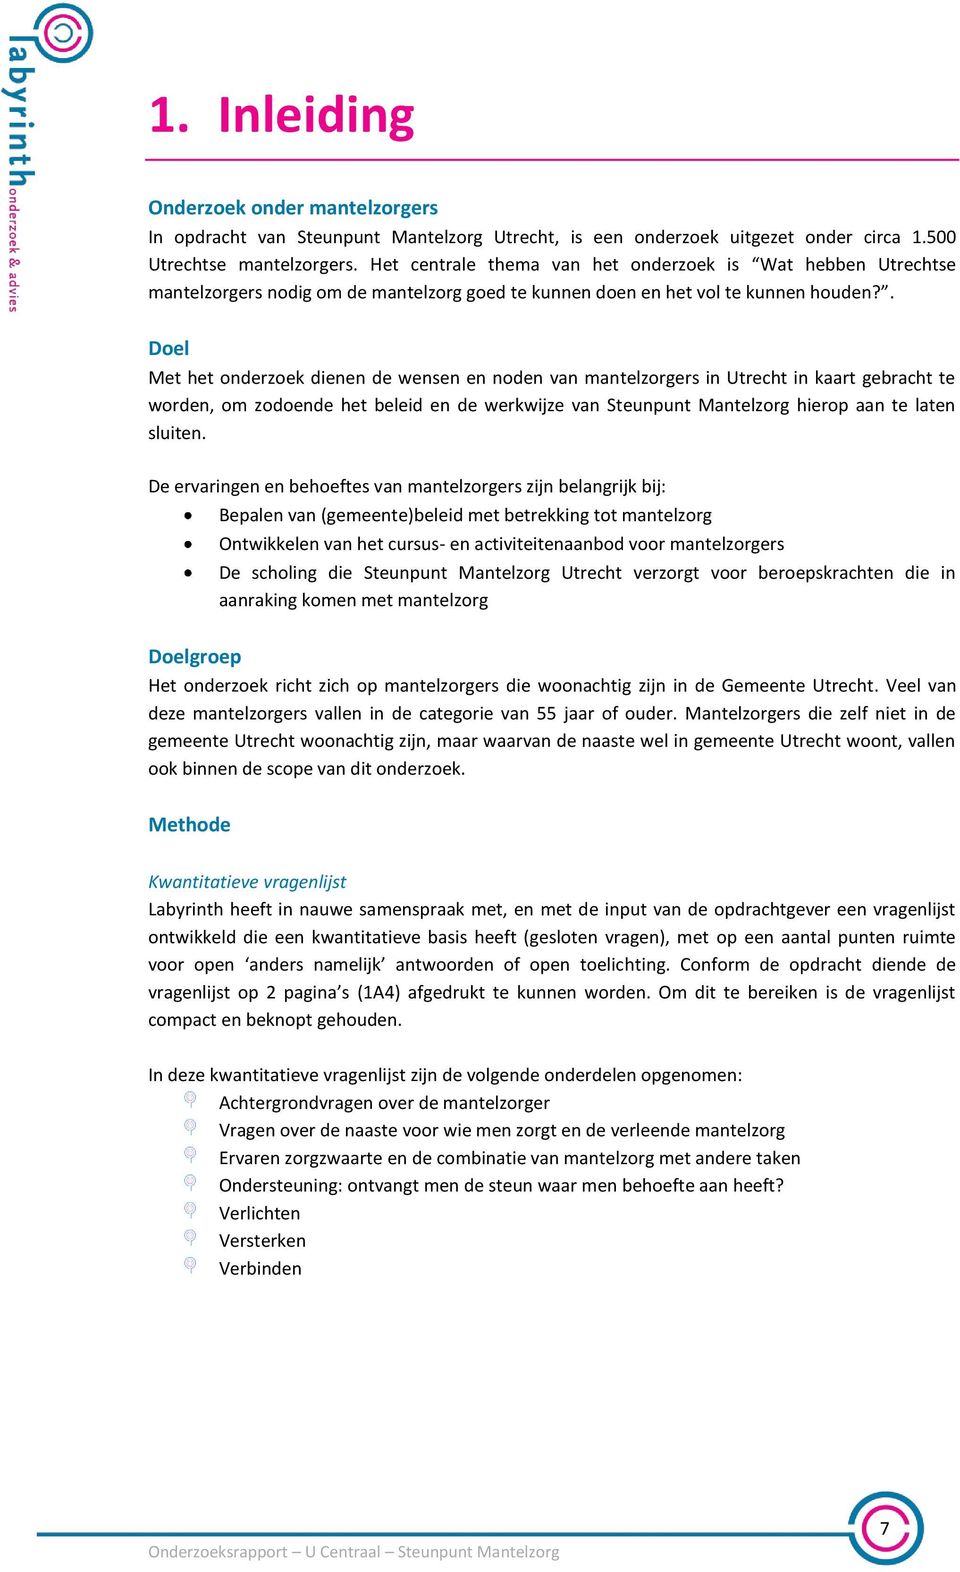 . Doel Met het onderzoek dienen de wensen en noden van mantelzorgers in Utrecht in kaart gebracht te worden, om zodoende het beleid en de werkwijze van Steunpunt Mantelzorg hierop aan te laten sluiten.